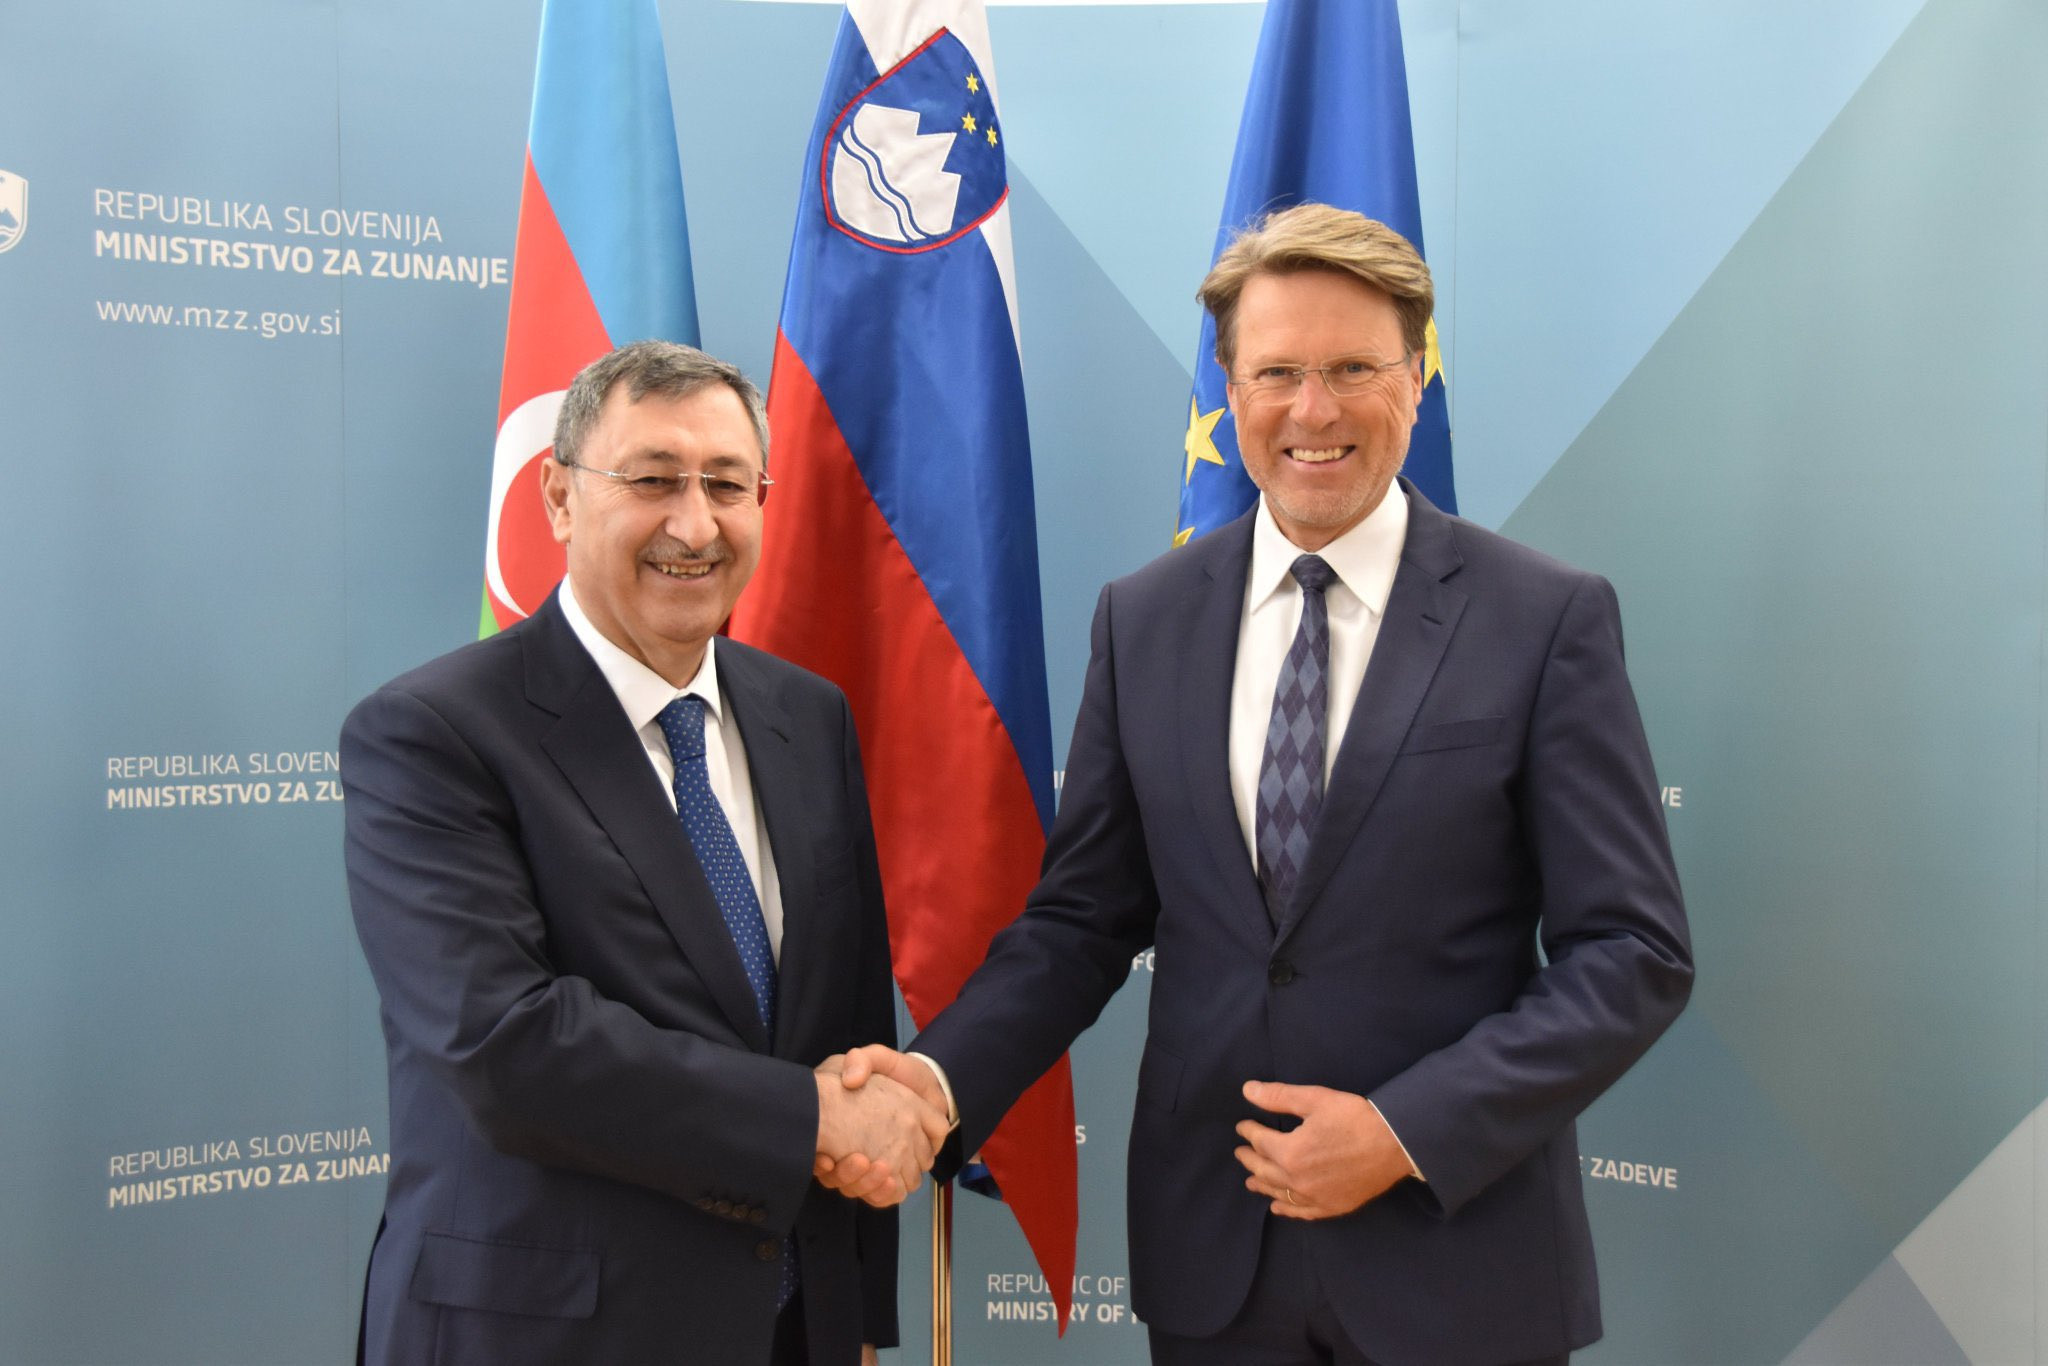 Проведены политконсультации между Азербайджаном и Словенией
